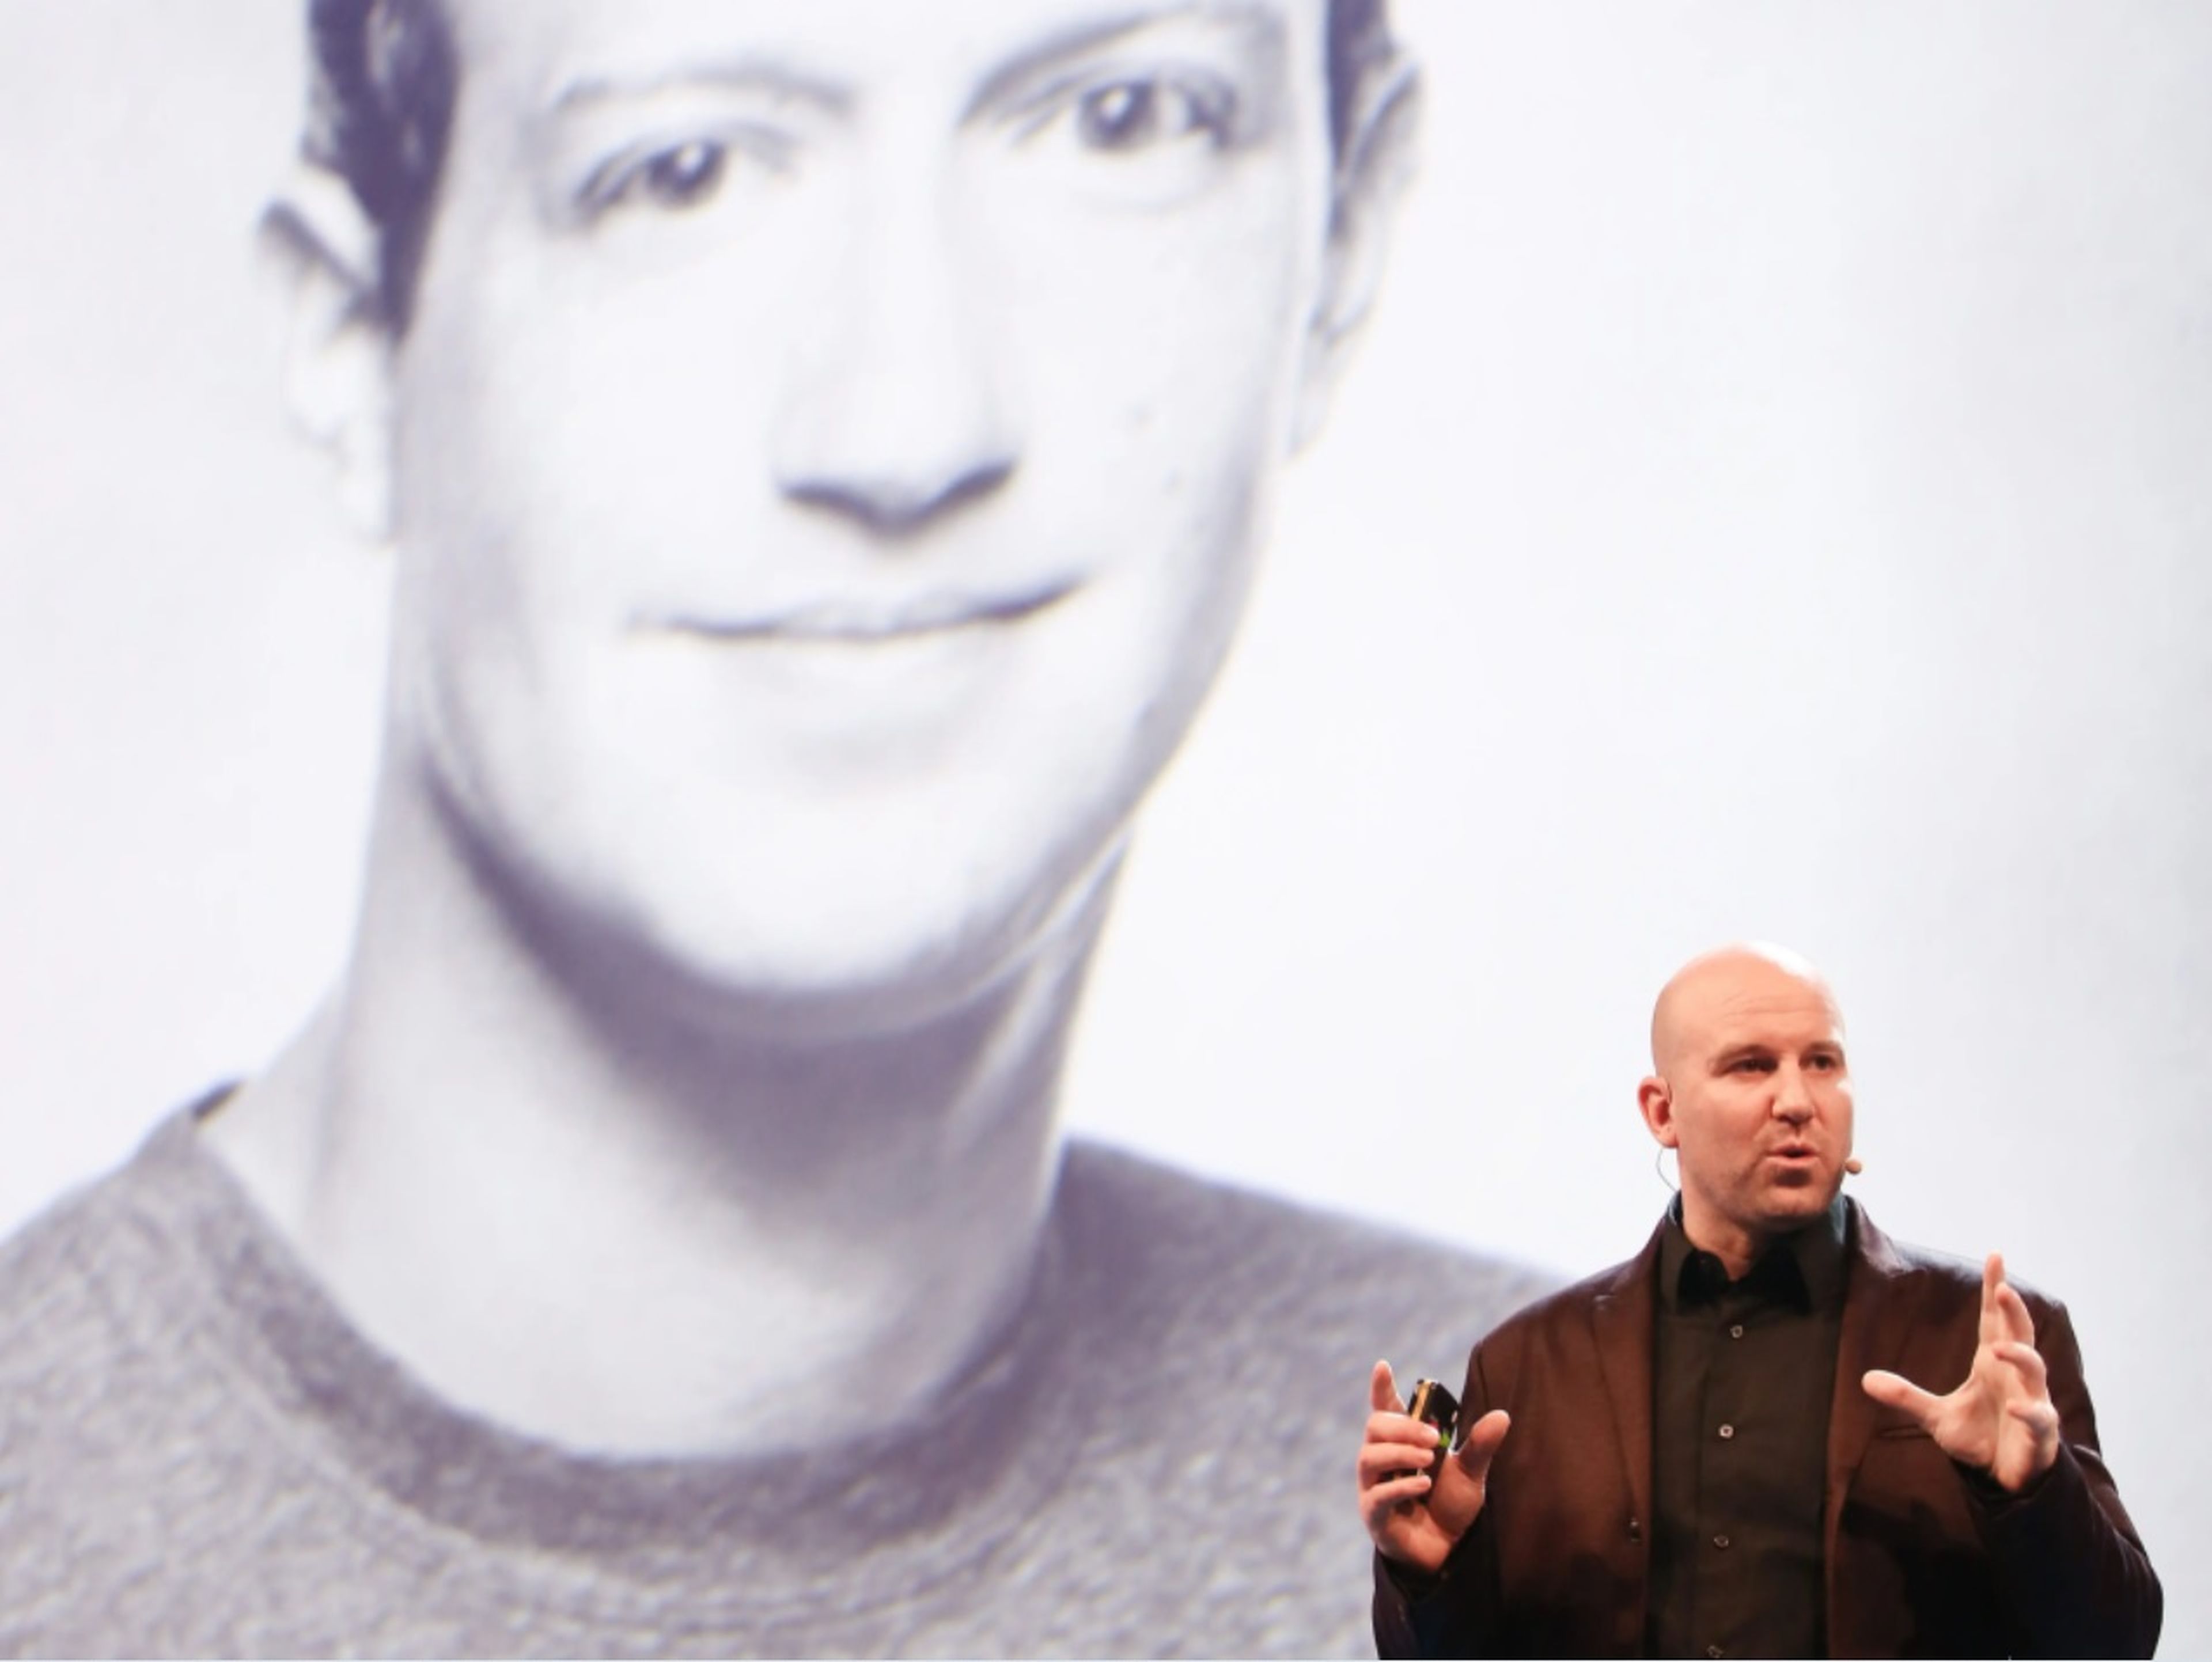 Andrew Bosworth, responsable de Tecnología de Facebook, junto a una fotografía de Zuckerberg.